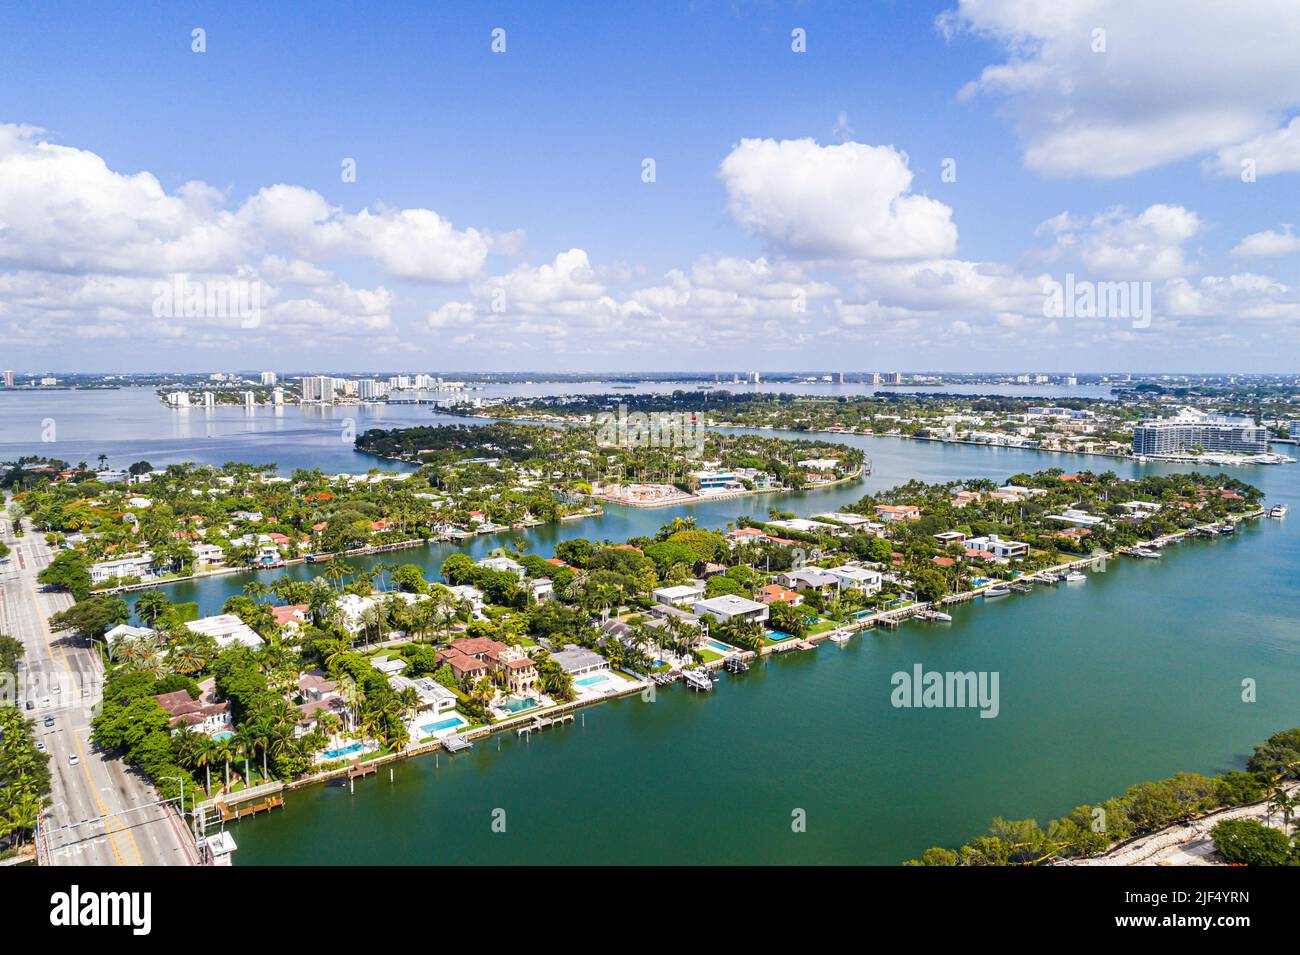 Miami Beach Florida, vista aérea desde arriba, Bahía Biscayne Indian Creek 63rd Street, La Gorce Island Allison Island casas casas mansiones residen Foto de stock